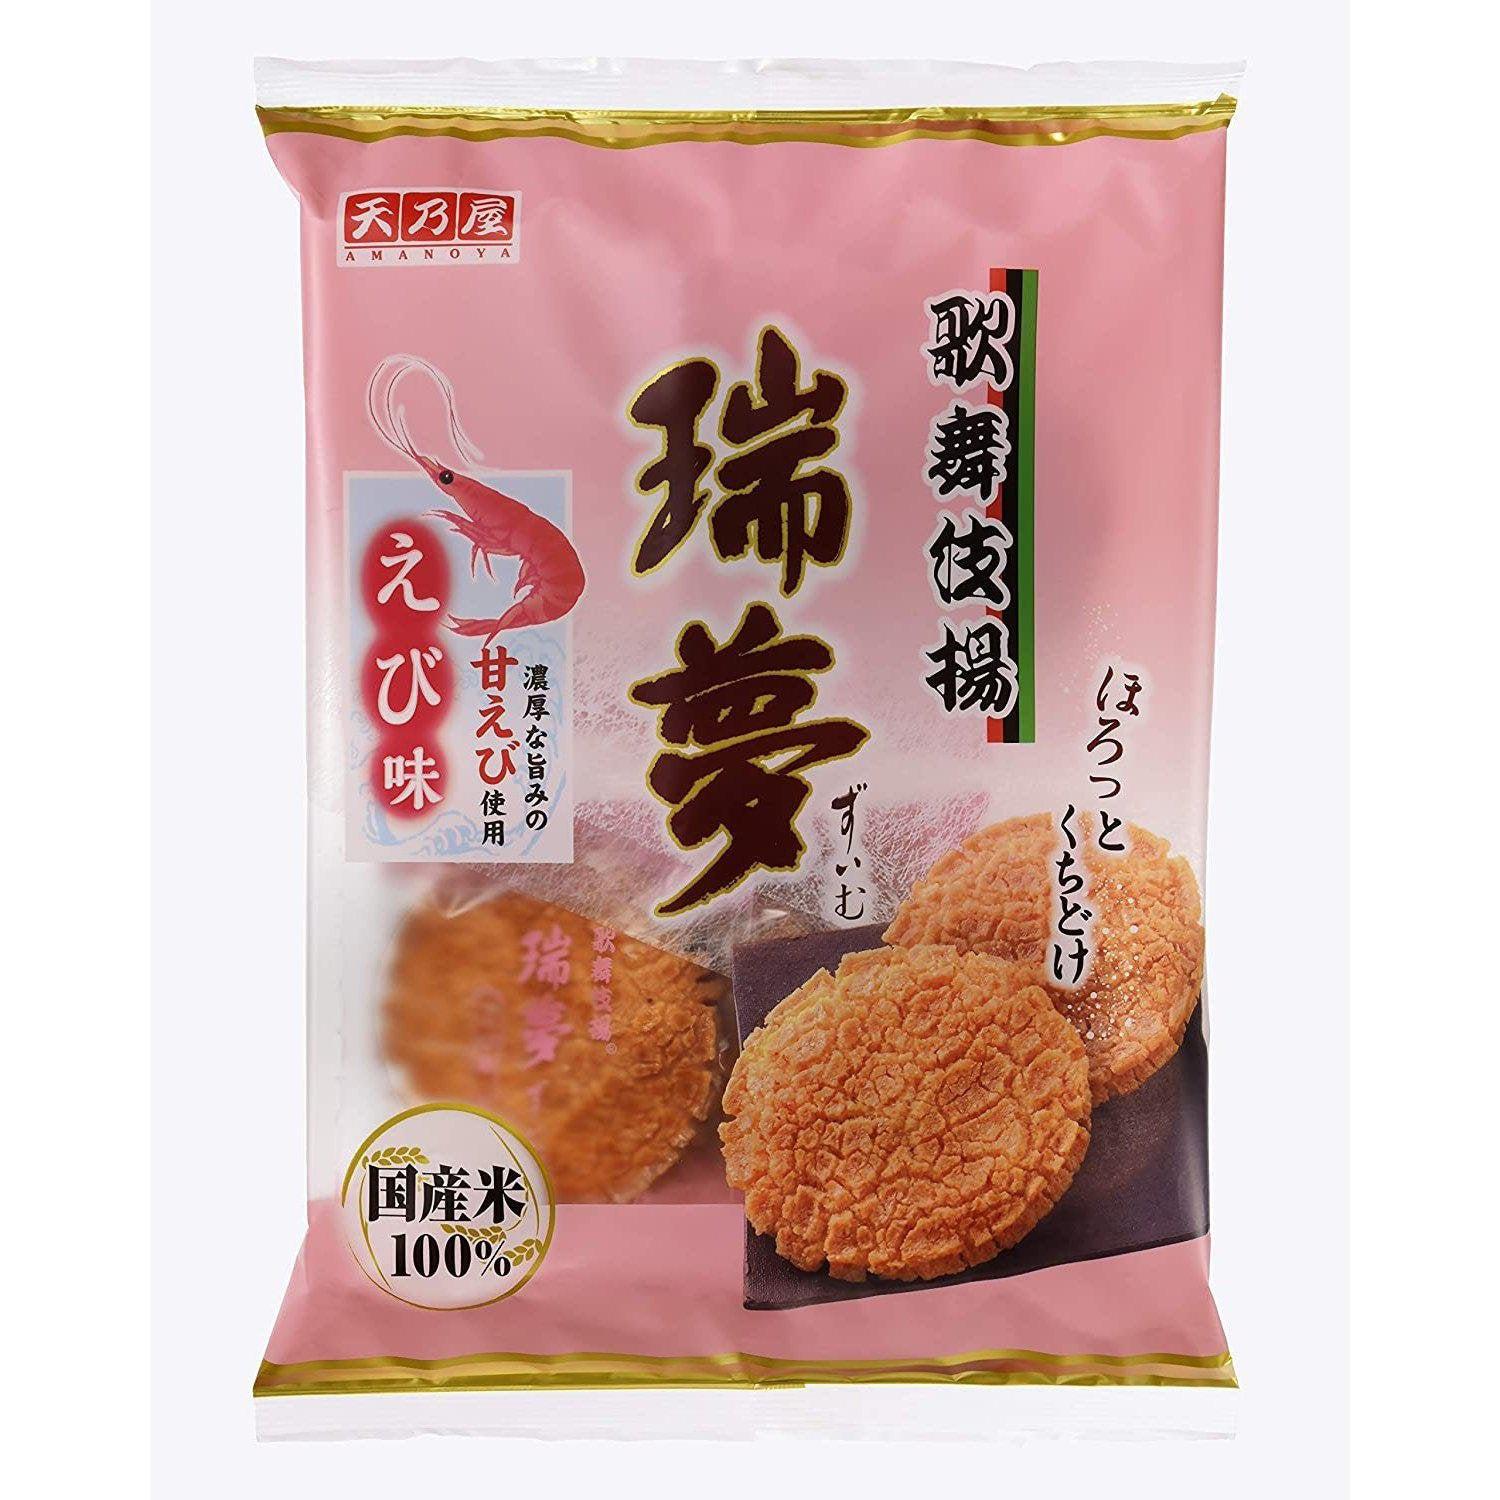 Amanoya Kabukiage Zuimu Shrimp Rice Crackers 6 Pieces